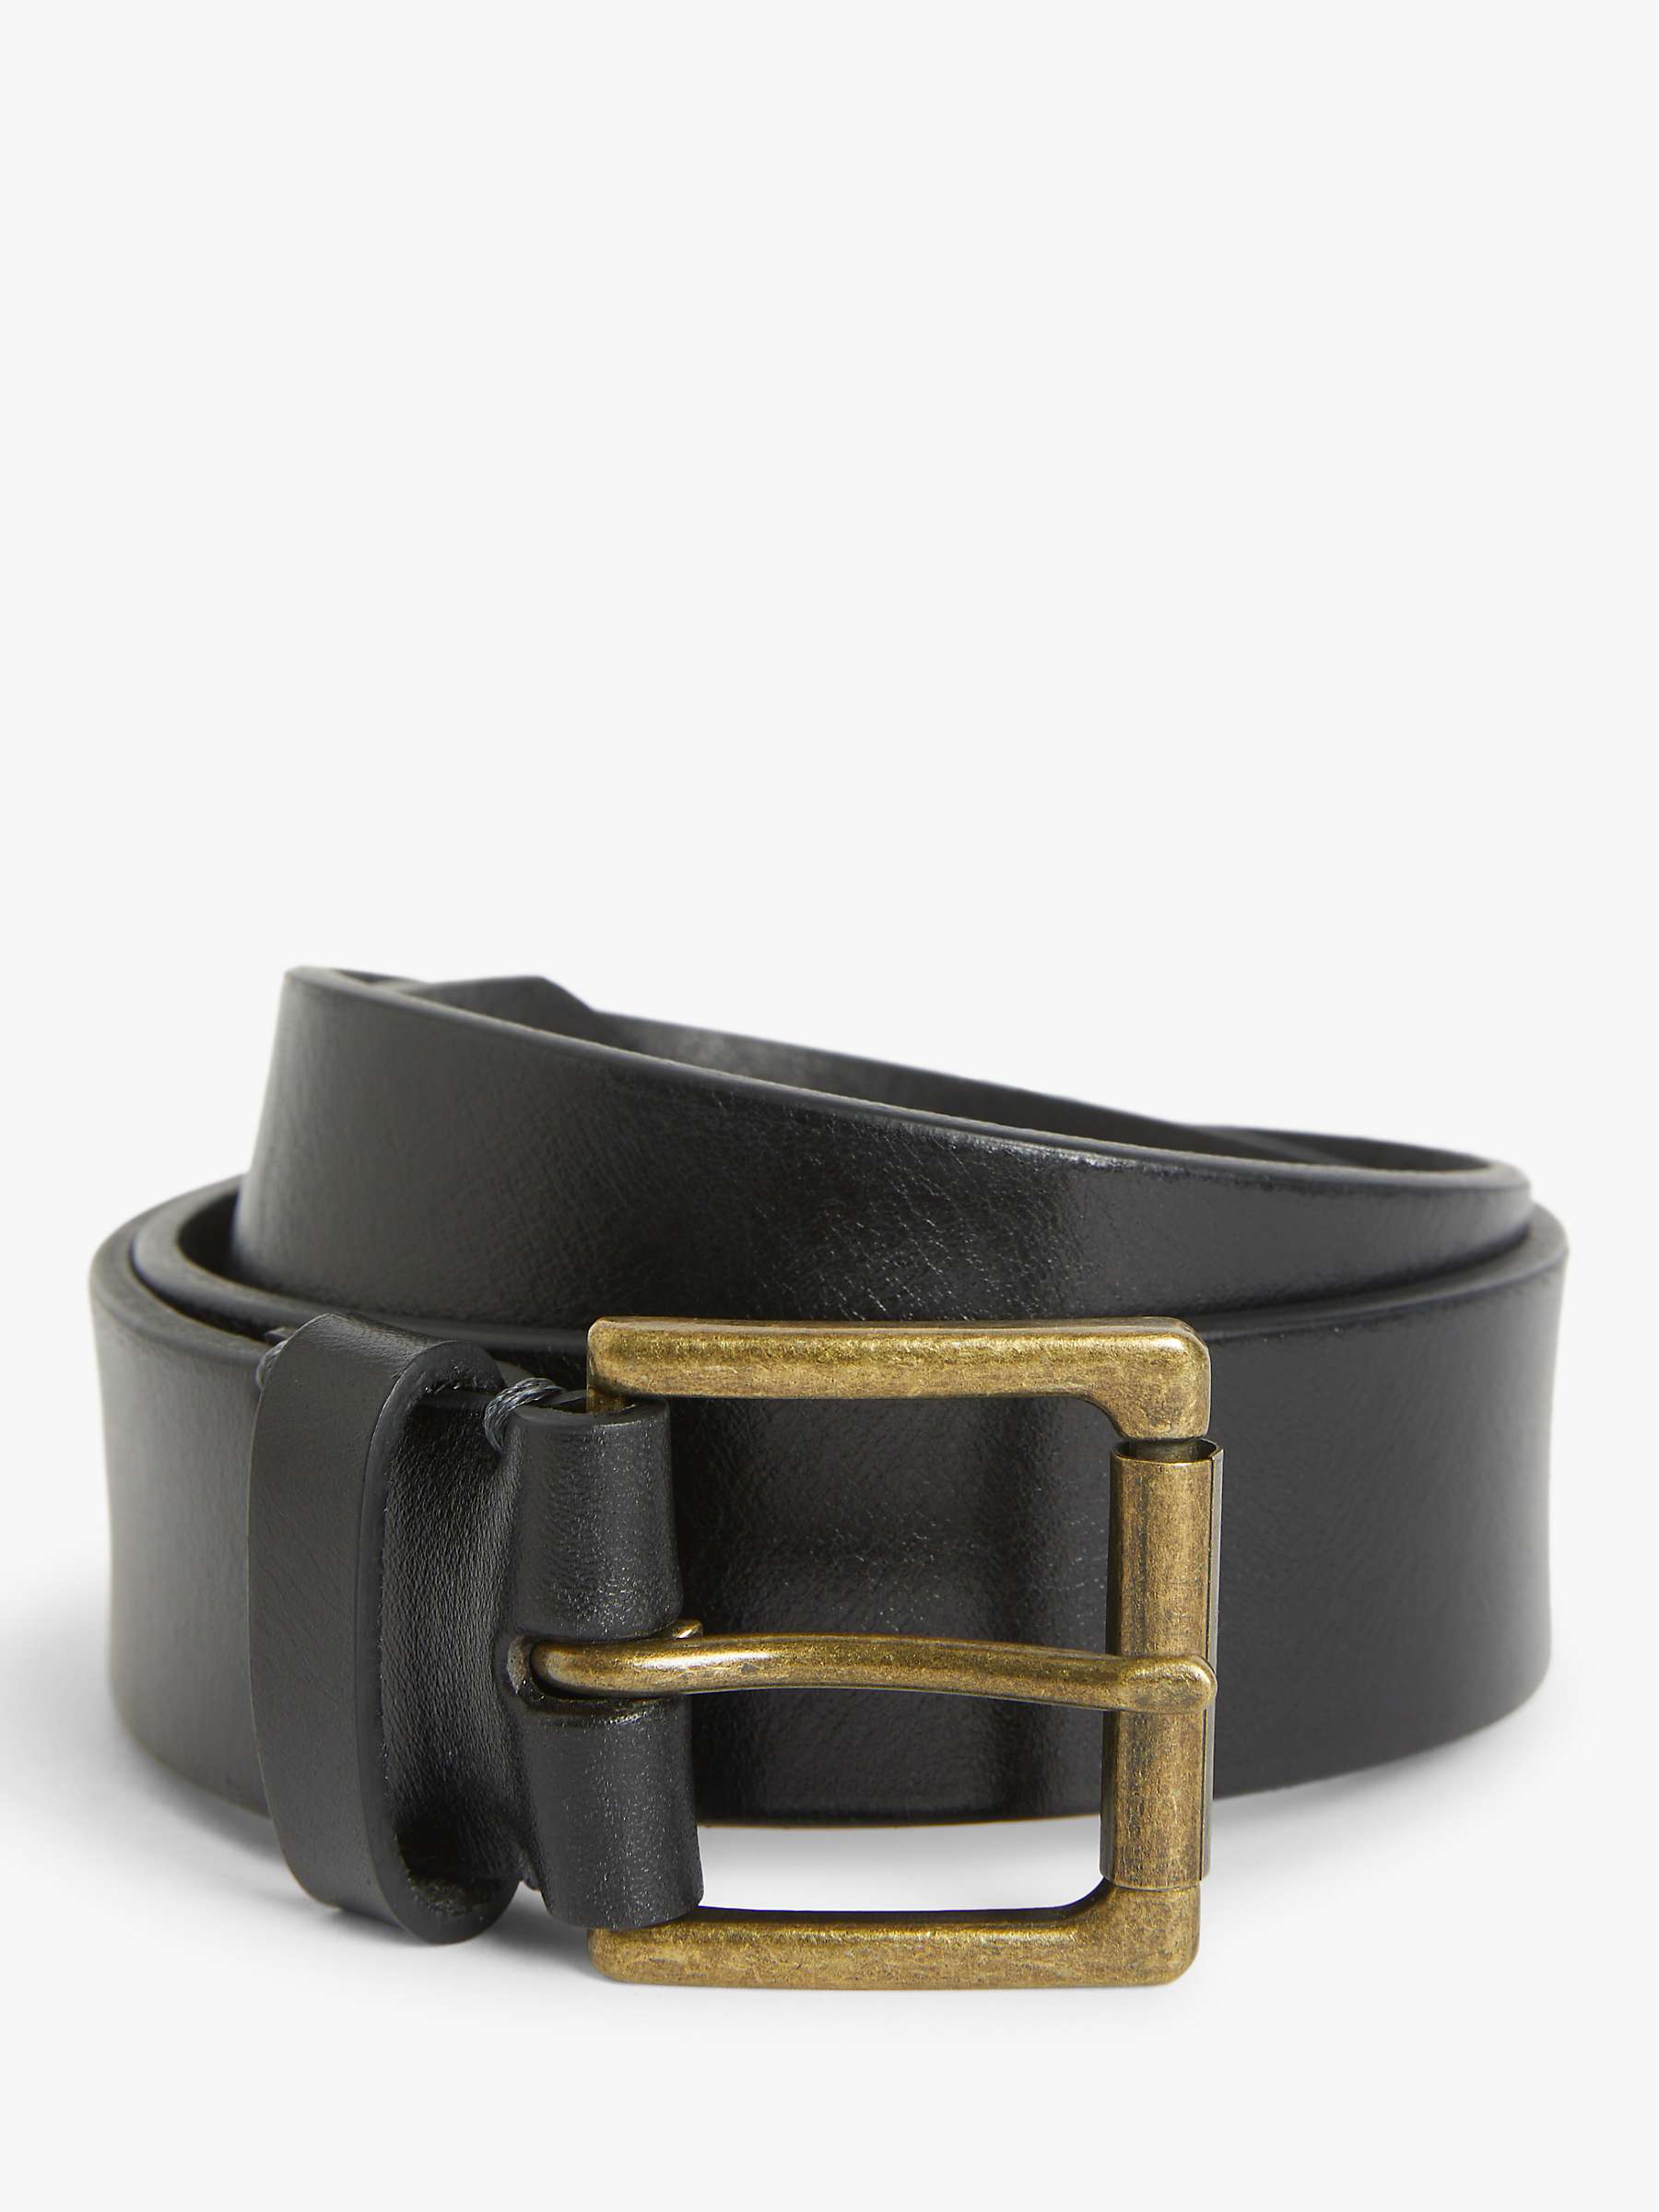 Buy John Lewis 35mm Roller Buckle Leather Belt Online at johnlewis.com